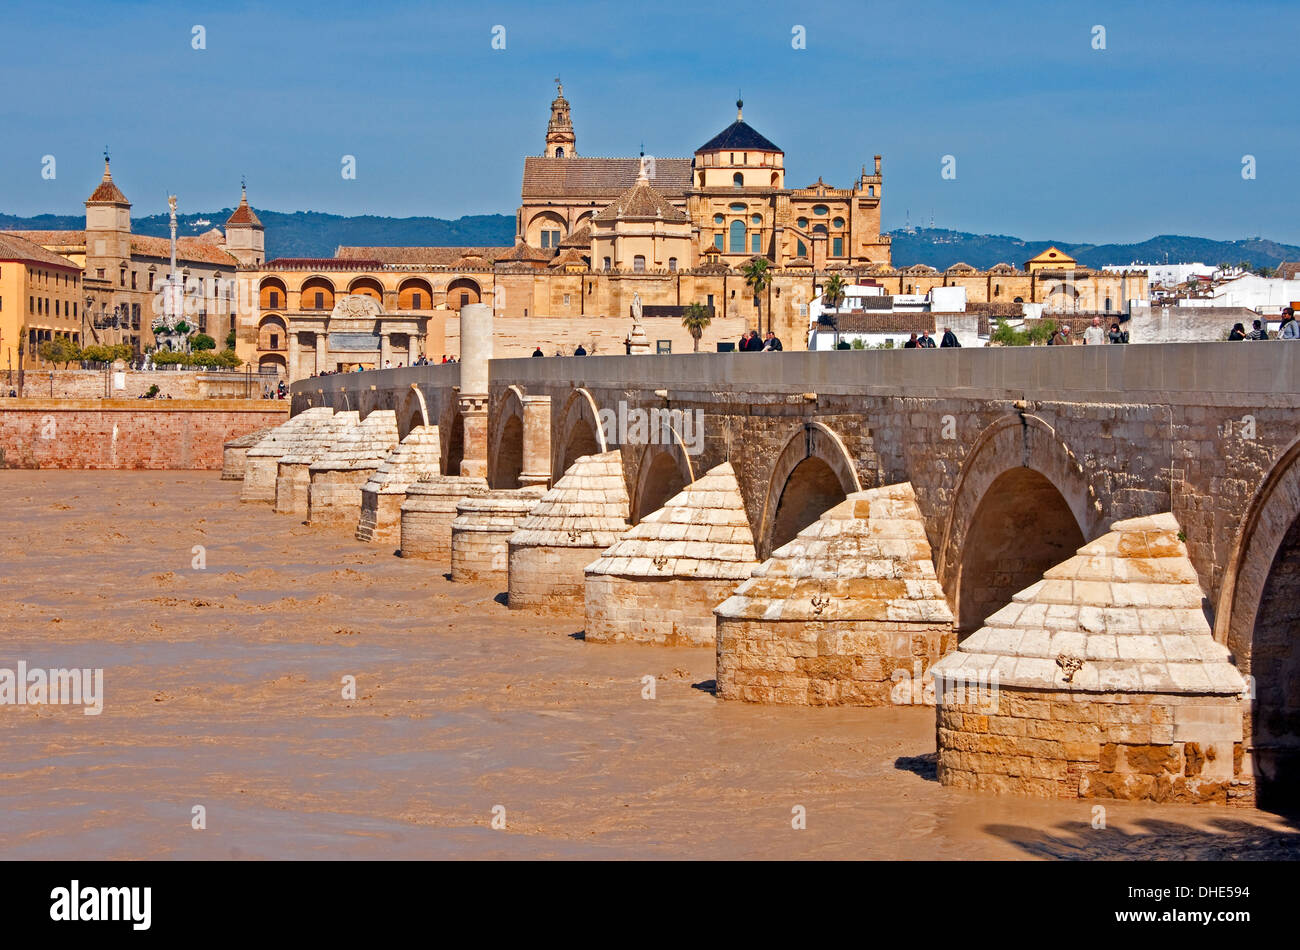 Pont romain sur la rivière Guadalquivir menant à la Grande Mosquée Mezquita à Cordoue, Espagne. Banque D'Images